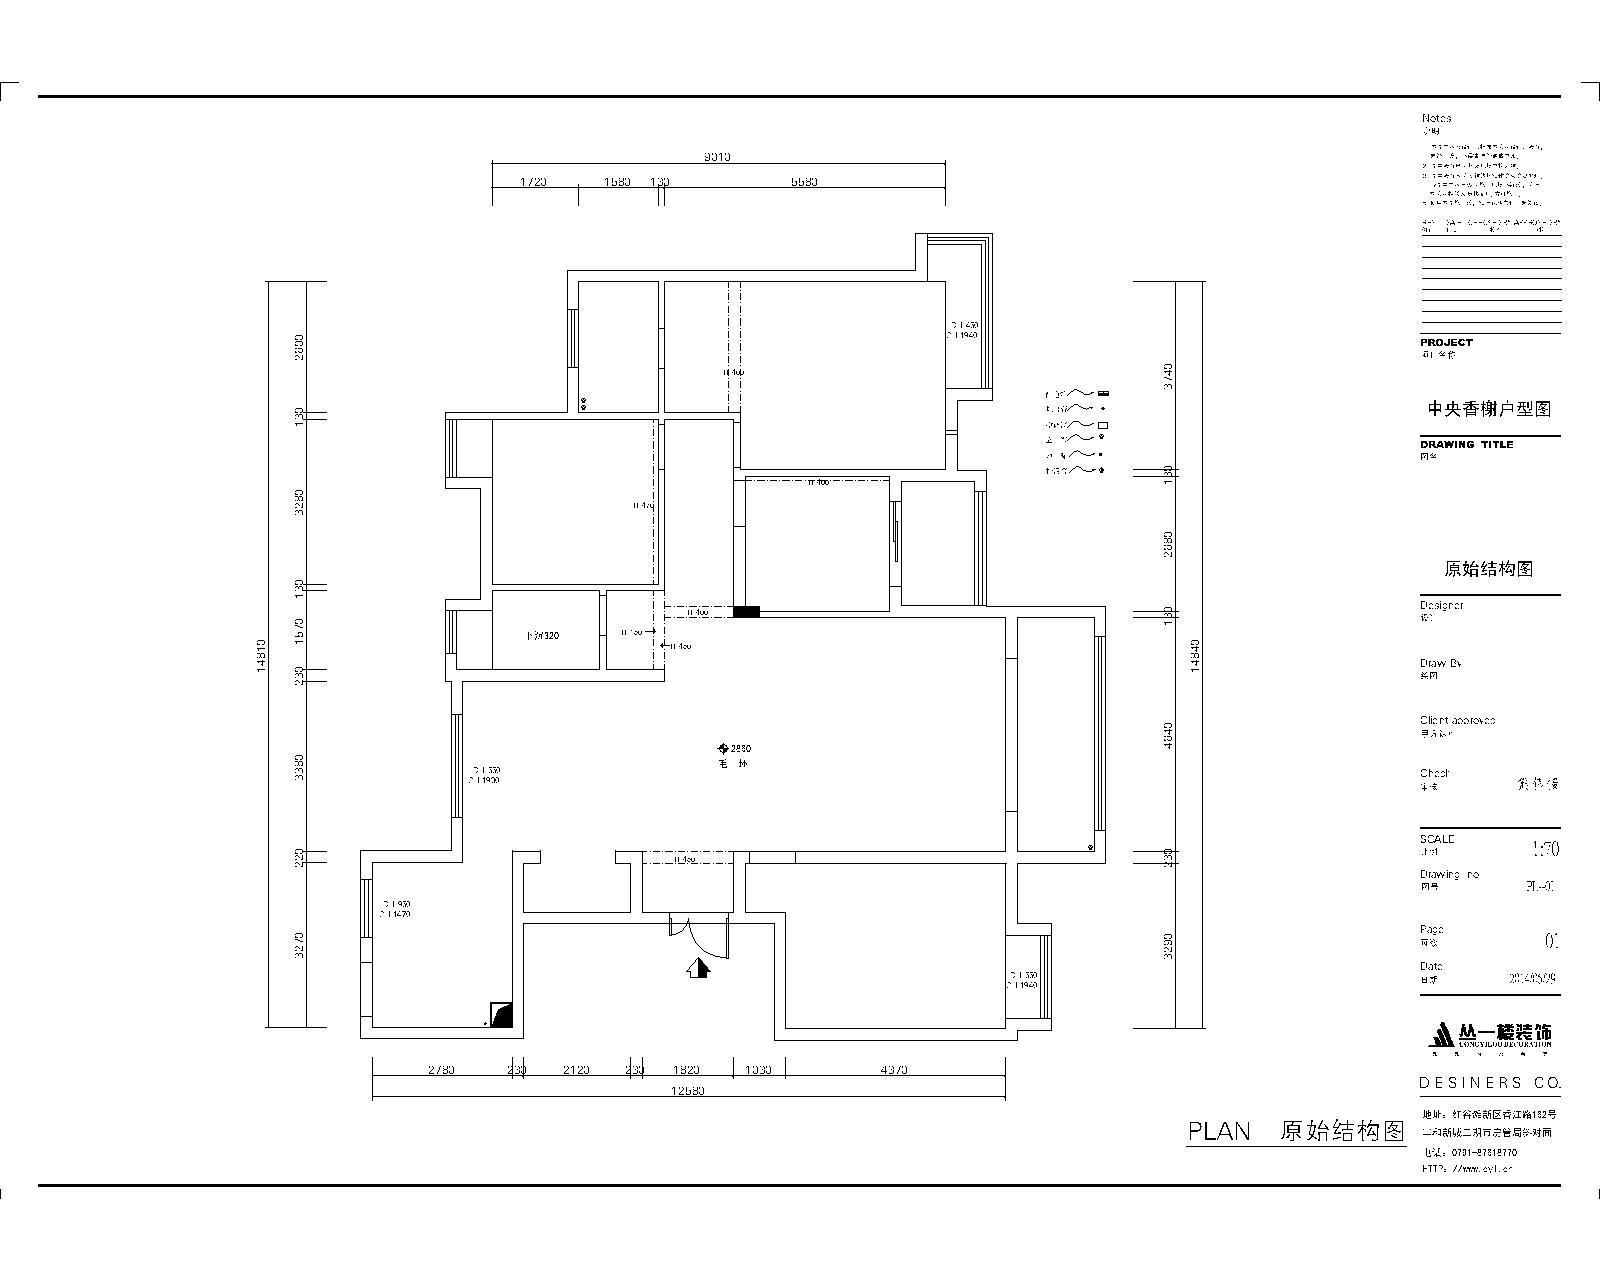 中央香榭-现代风格-四居室 154平效果图